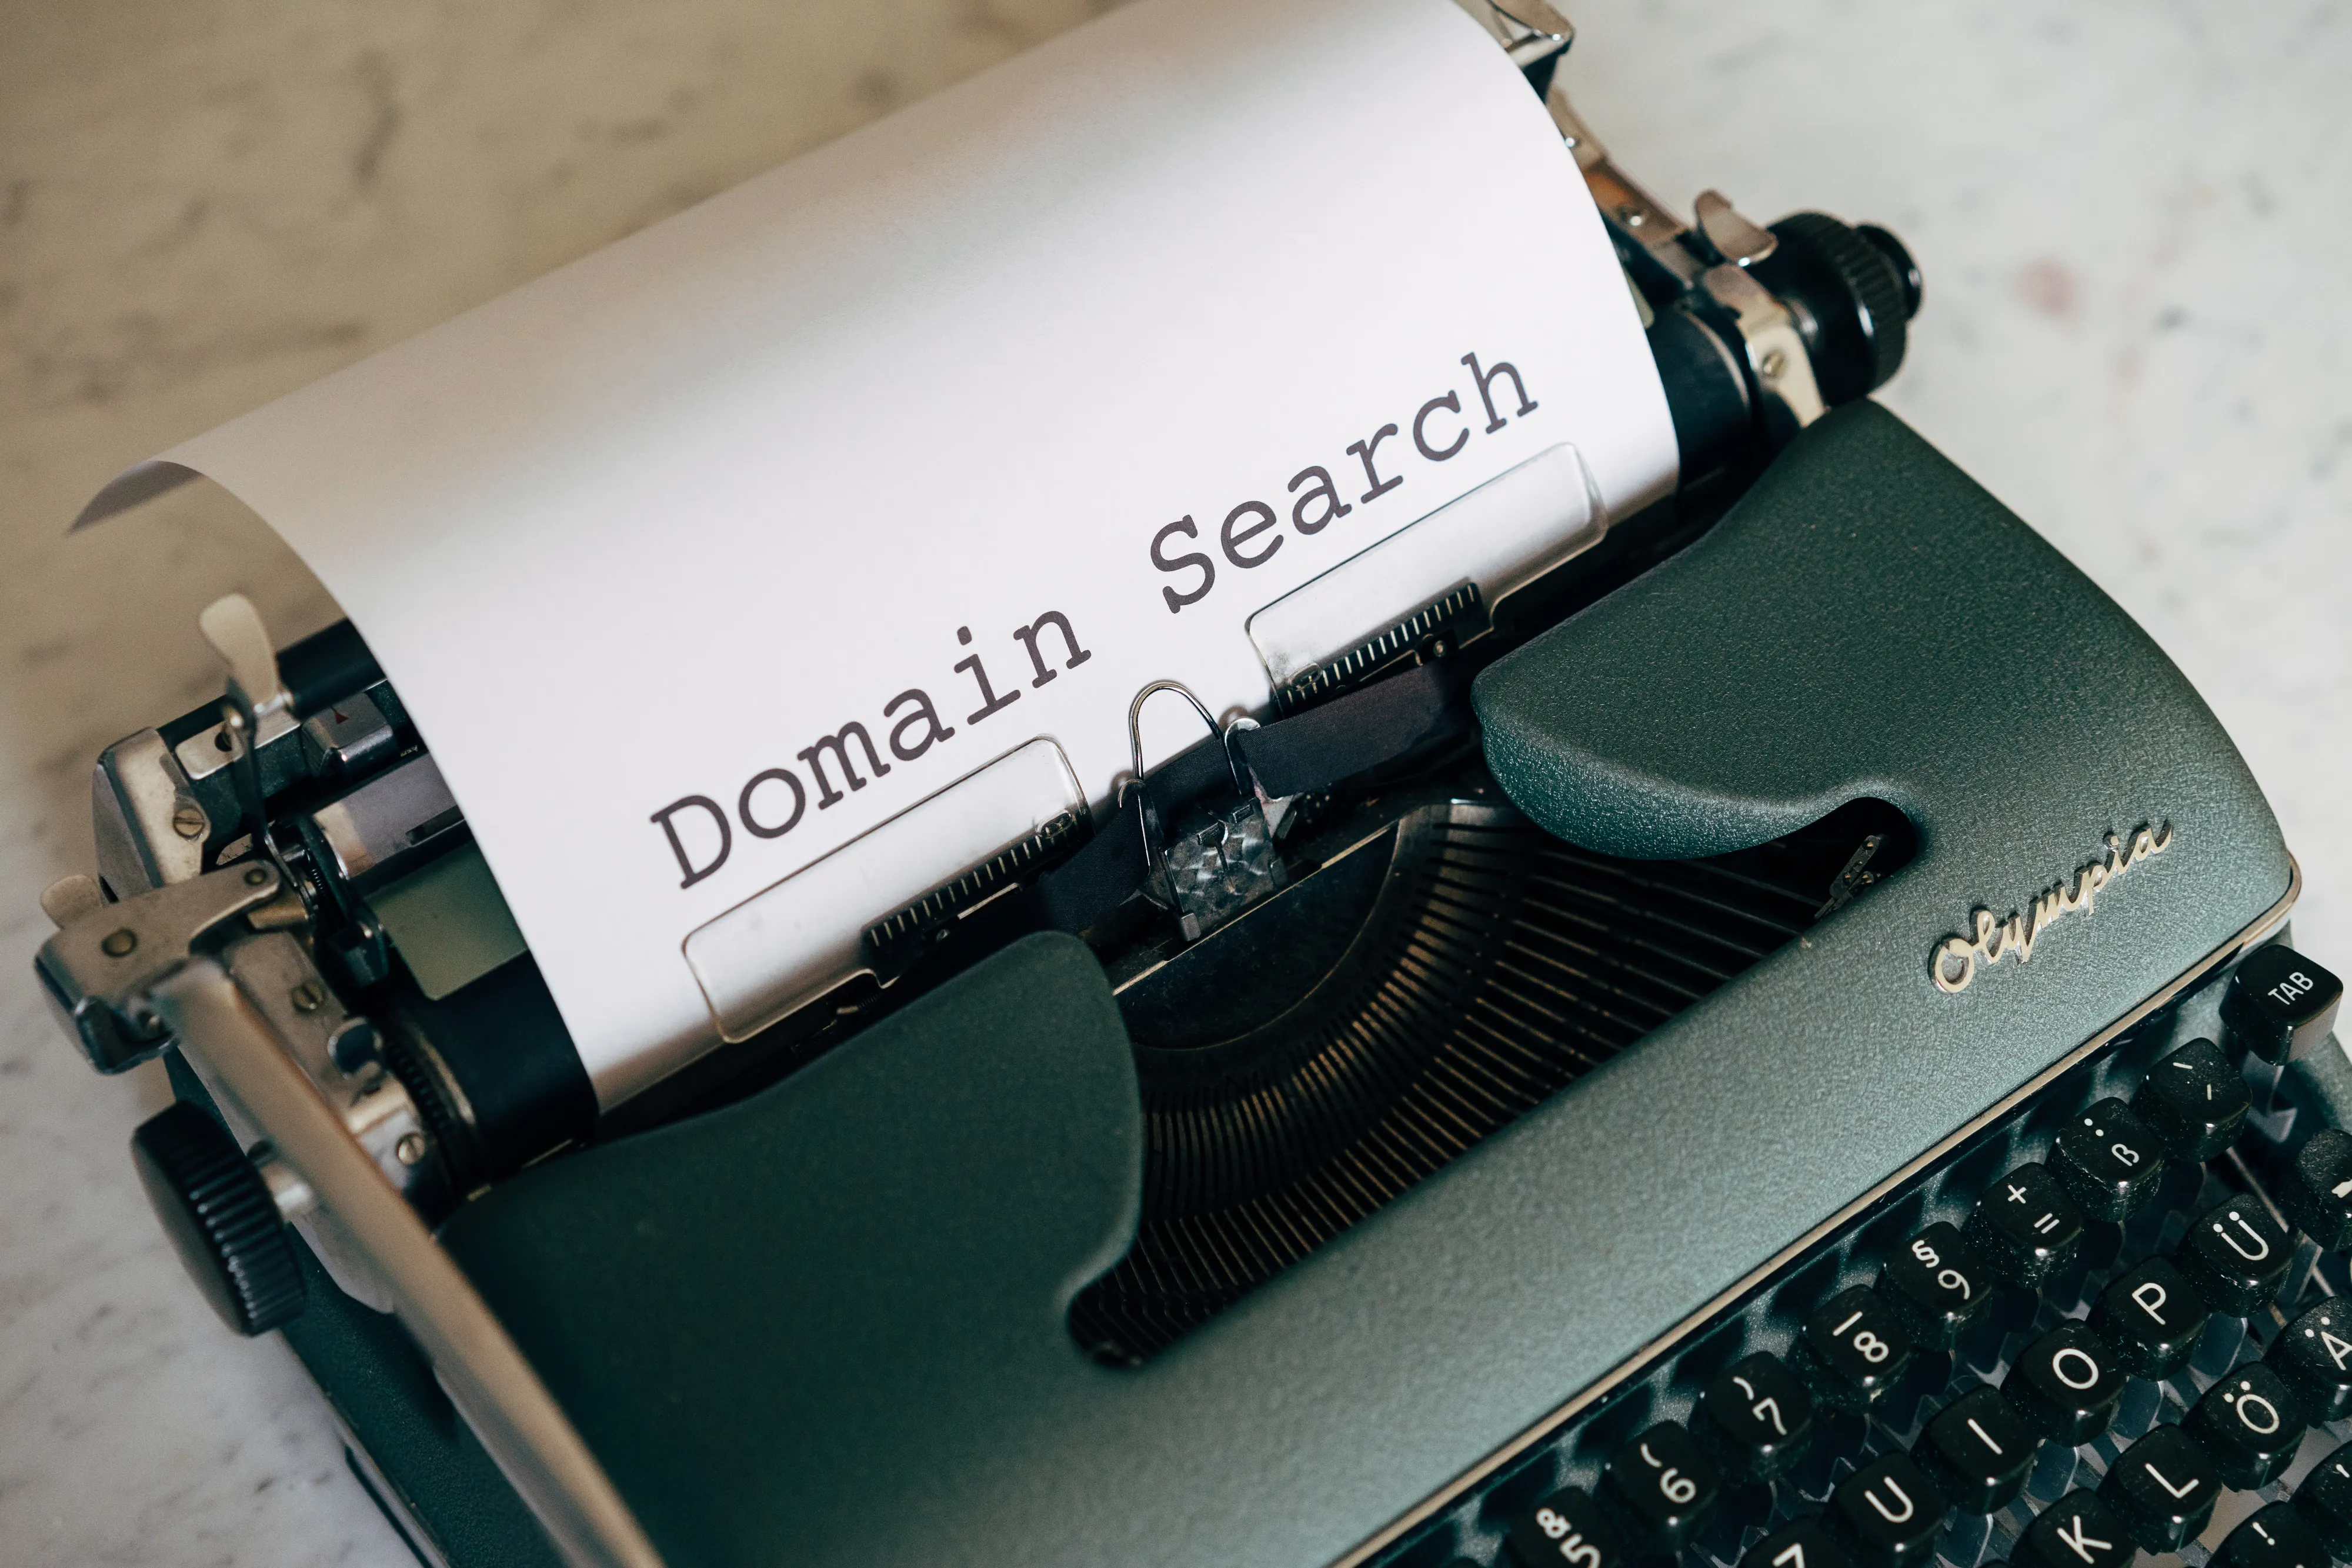 Domain İsmi Nasıl Seçilir ve Önemi